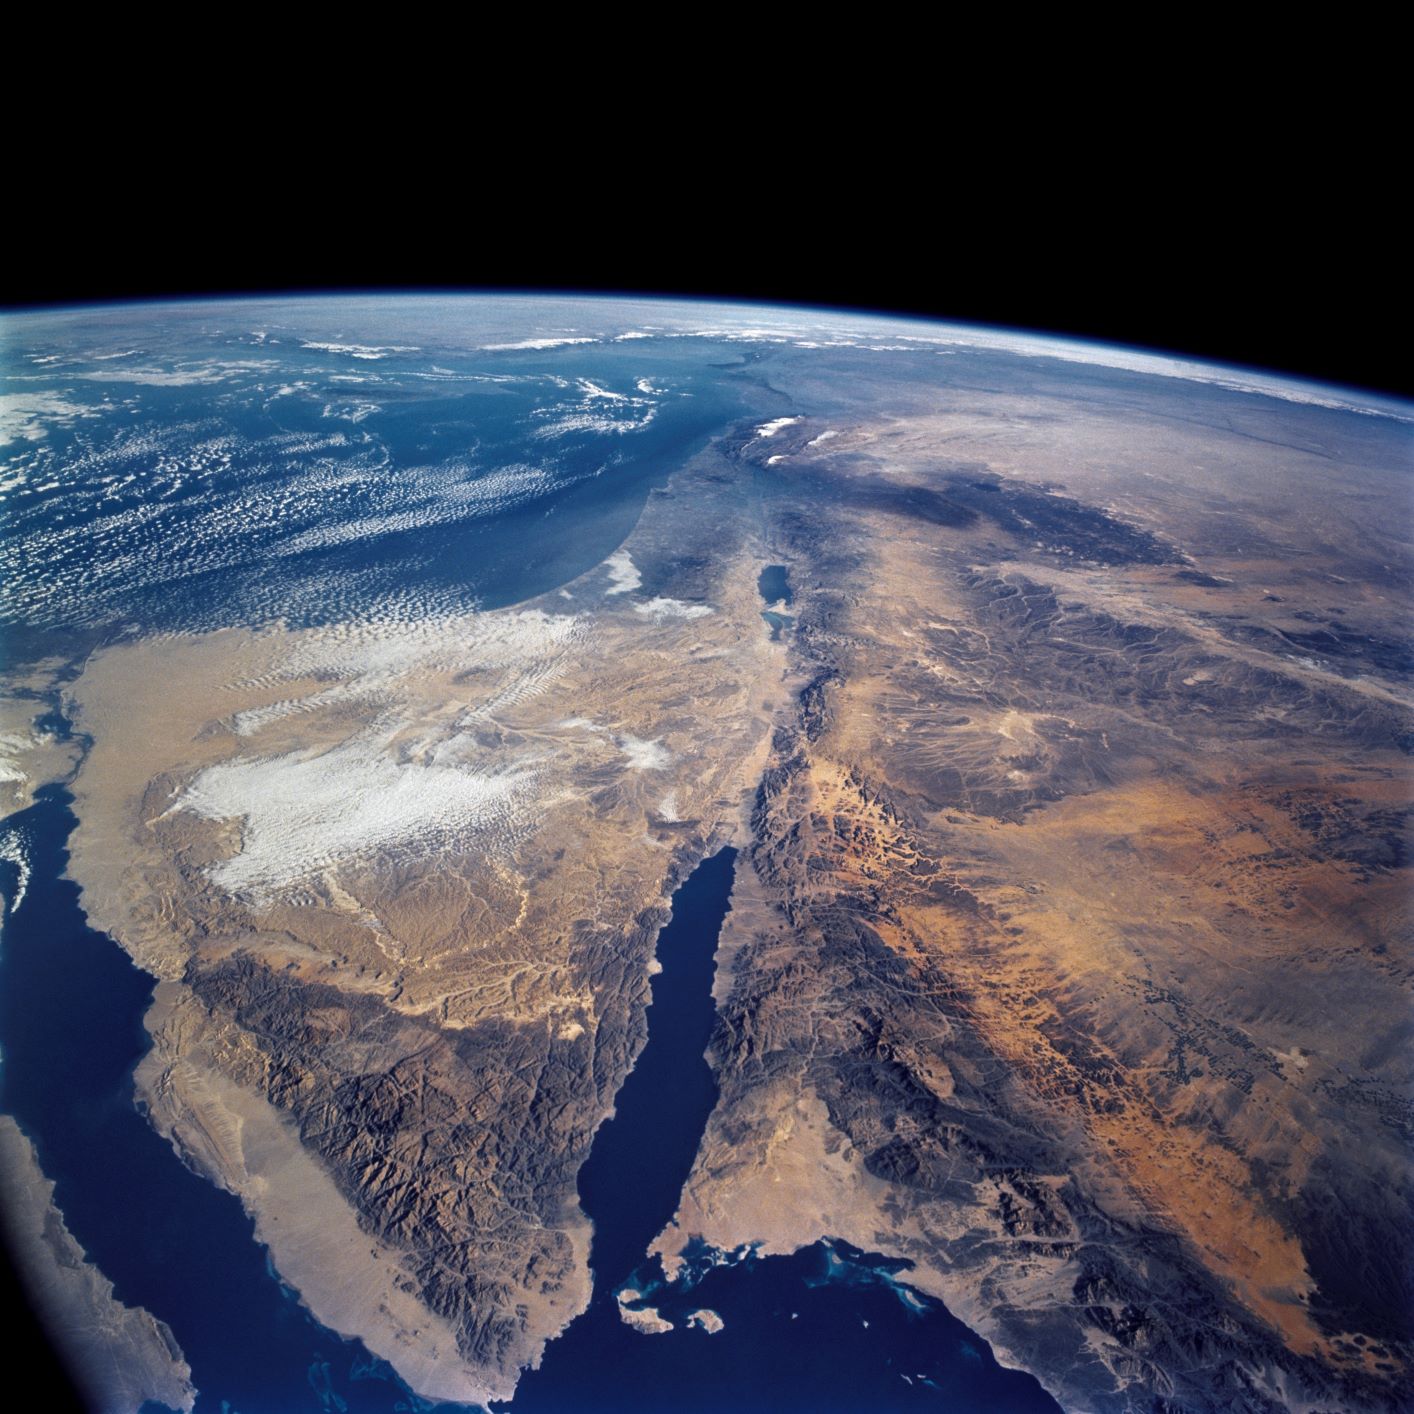 https://news.agu.org/files/2019/06/Aerial-view-Dead-Sea-NASA-Hubble-small.jpg